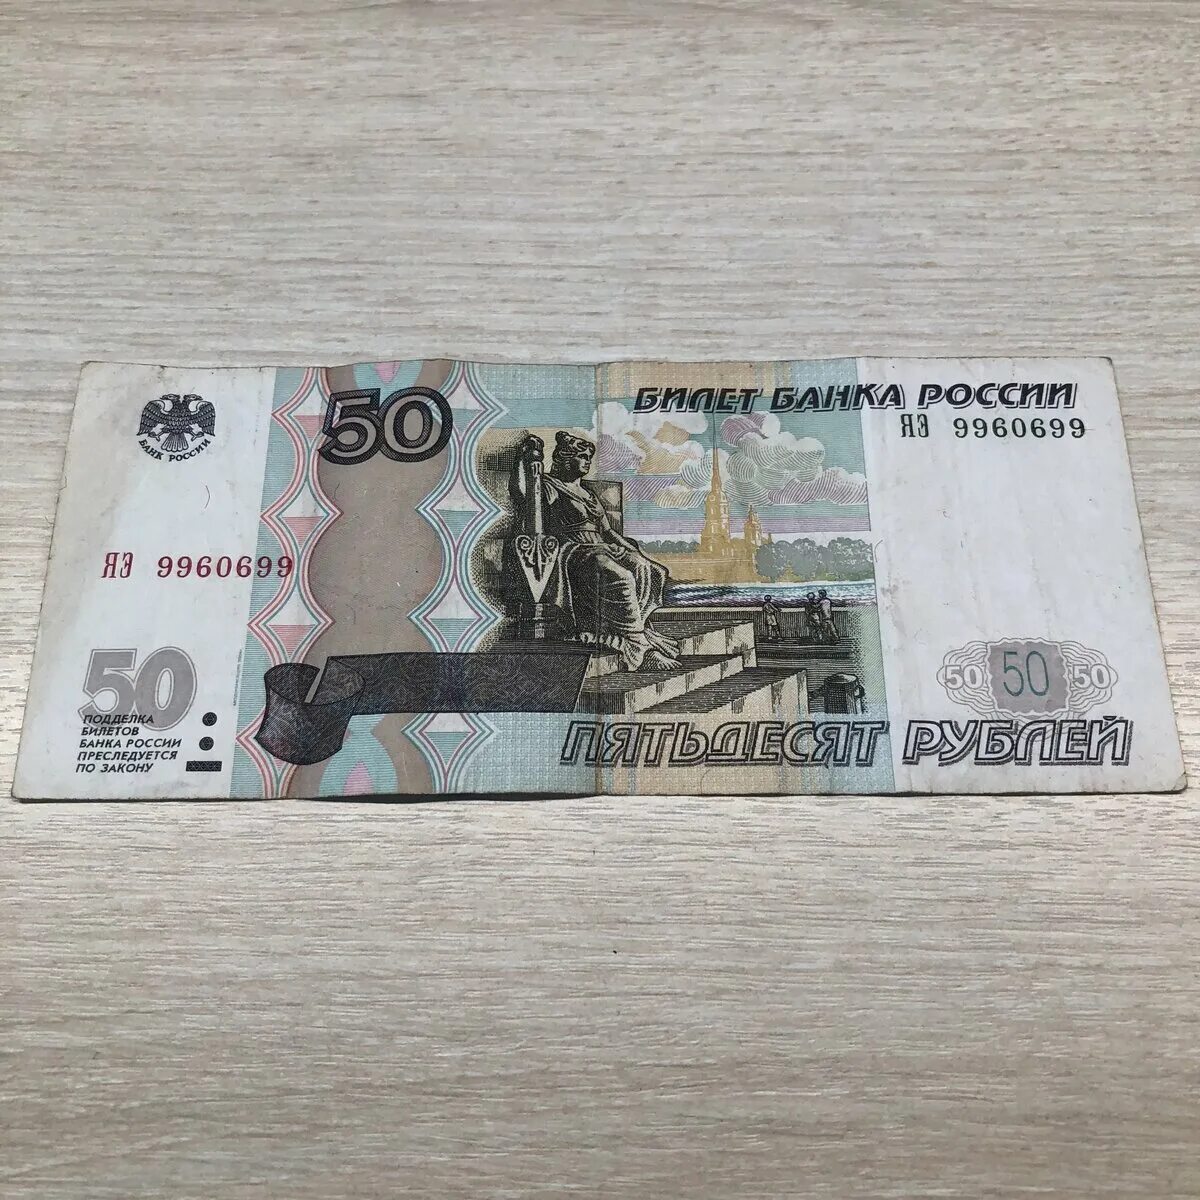 50 рублей словами. 50 Рублей. Купюра 50 рублей. 50 Рублей номер. 50 Рублей с красивым номером.